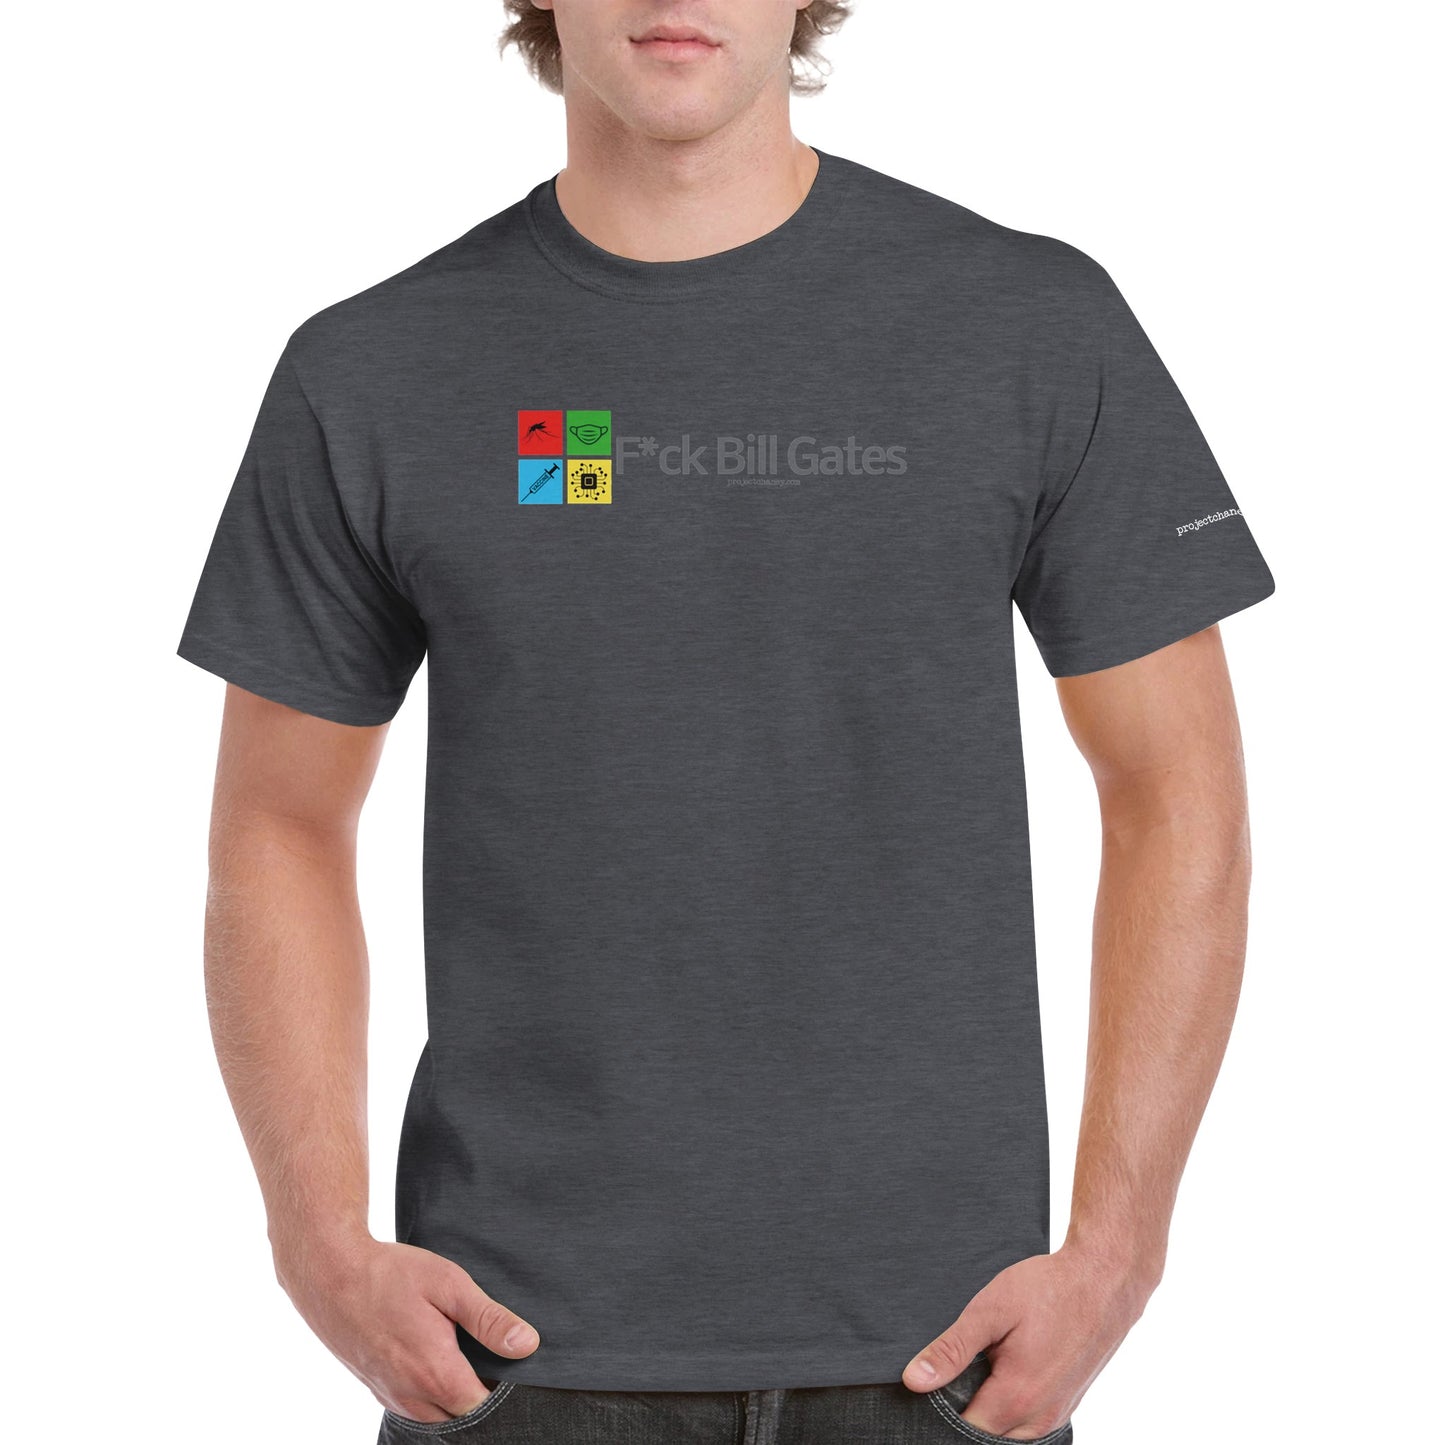 F*ck Bill Gates Crewneck T-shirt